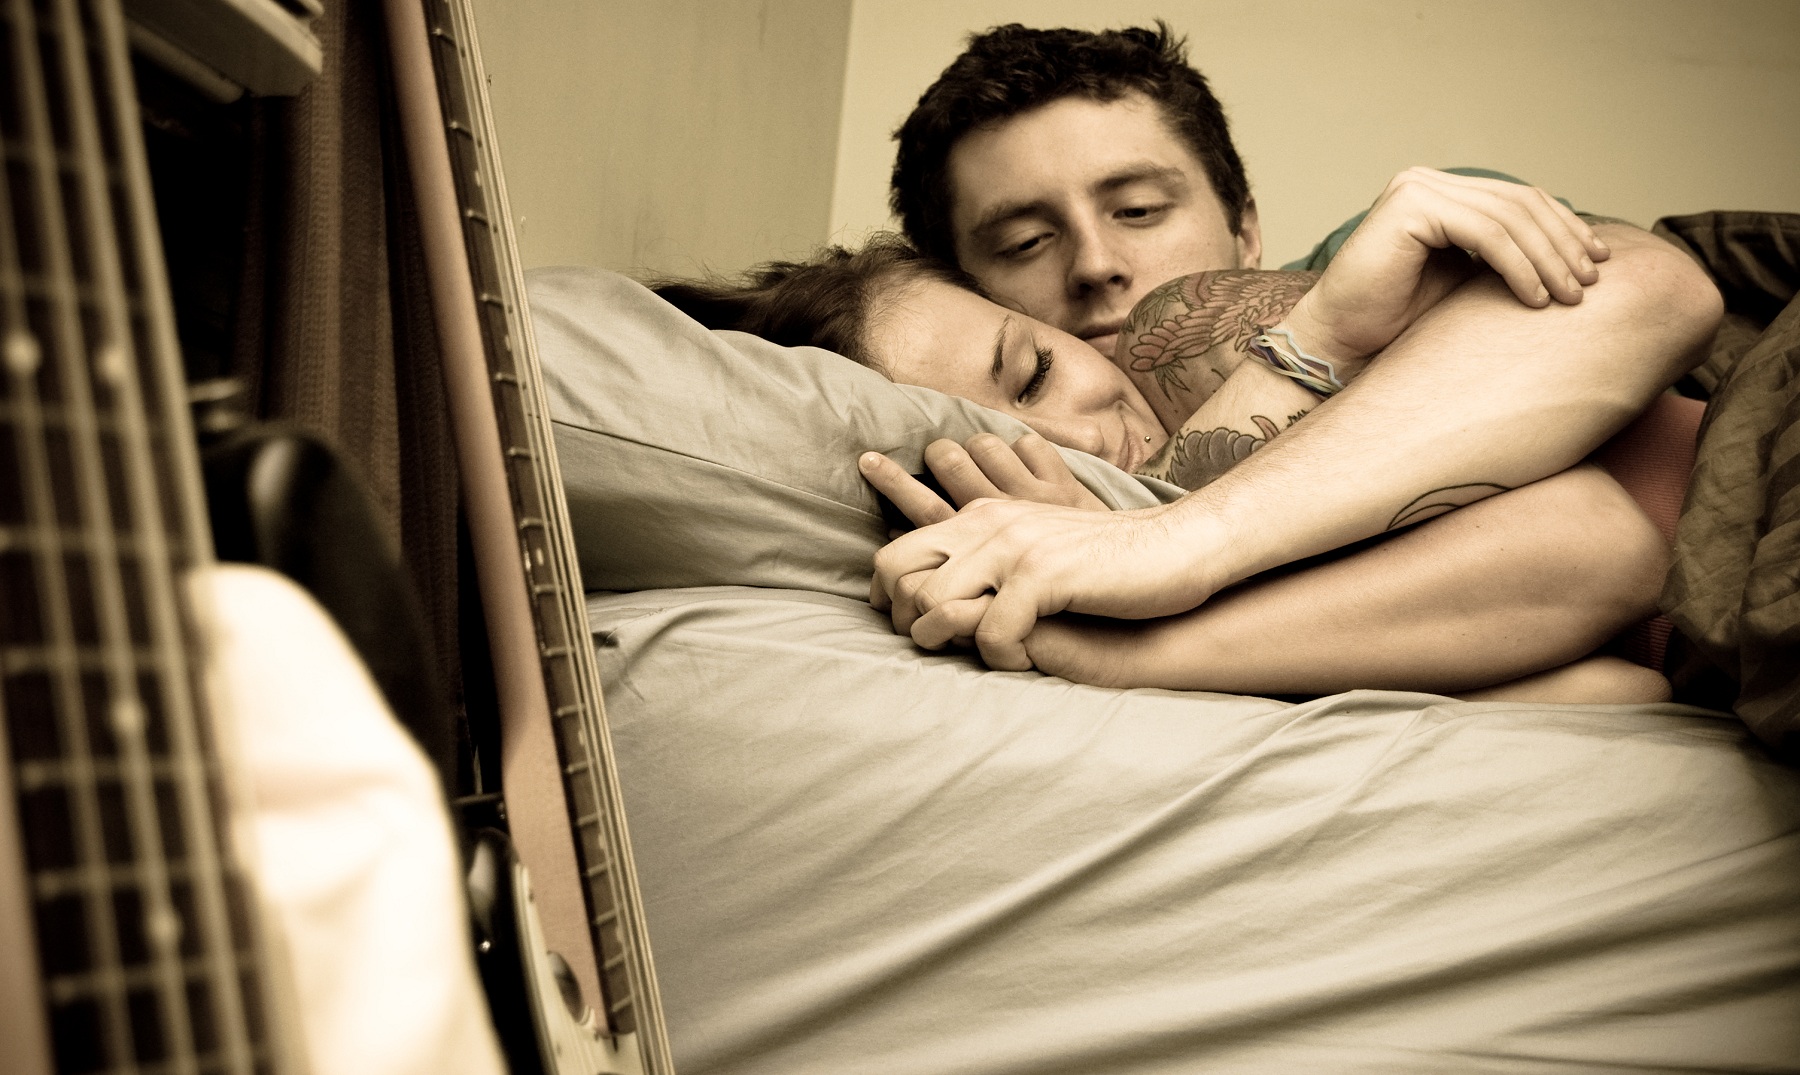 Sexsomnio: hacer el amor dormido